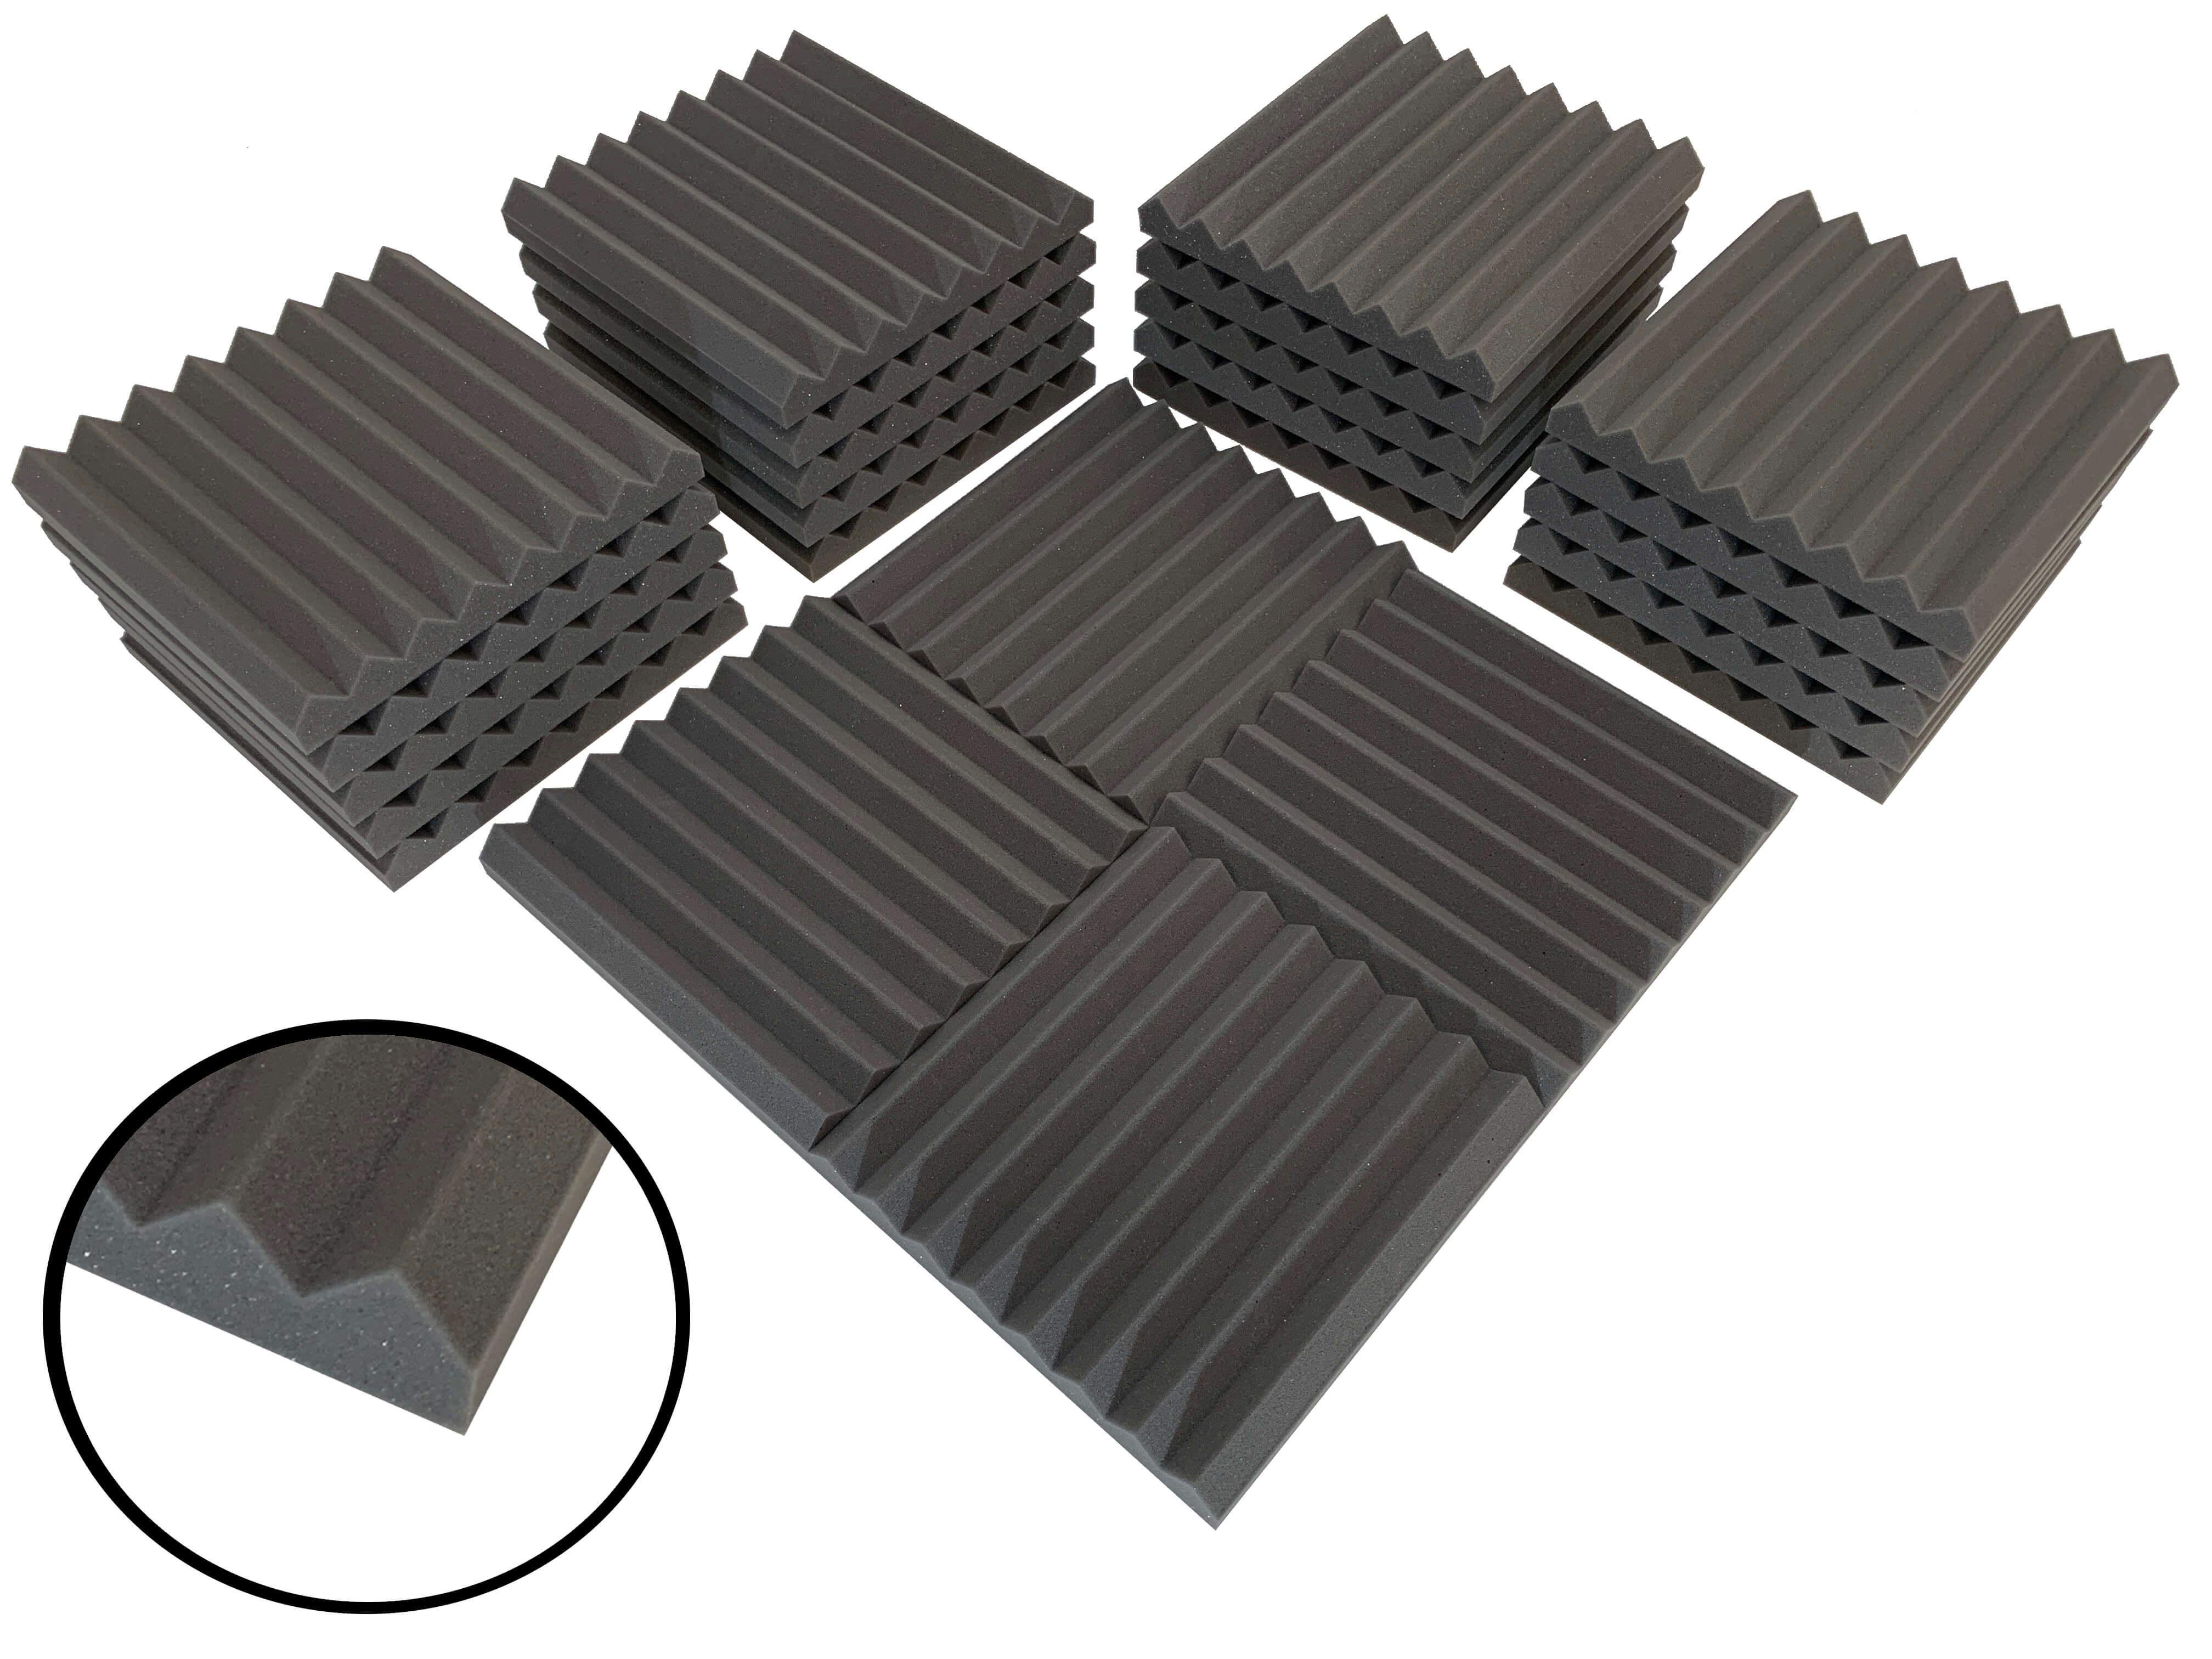 Wedge 12" Acoustic Studio Foam Tile Pack - 24 dalles, couverture de 2,2 m²